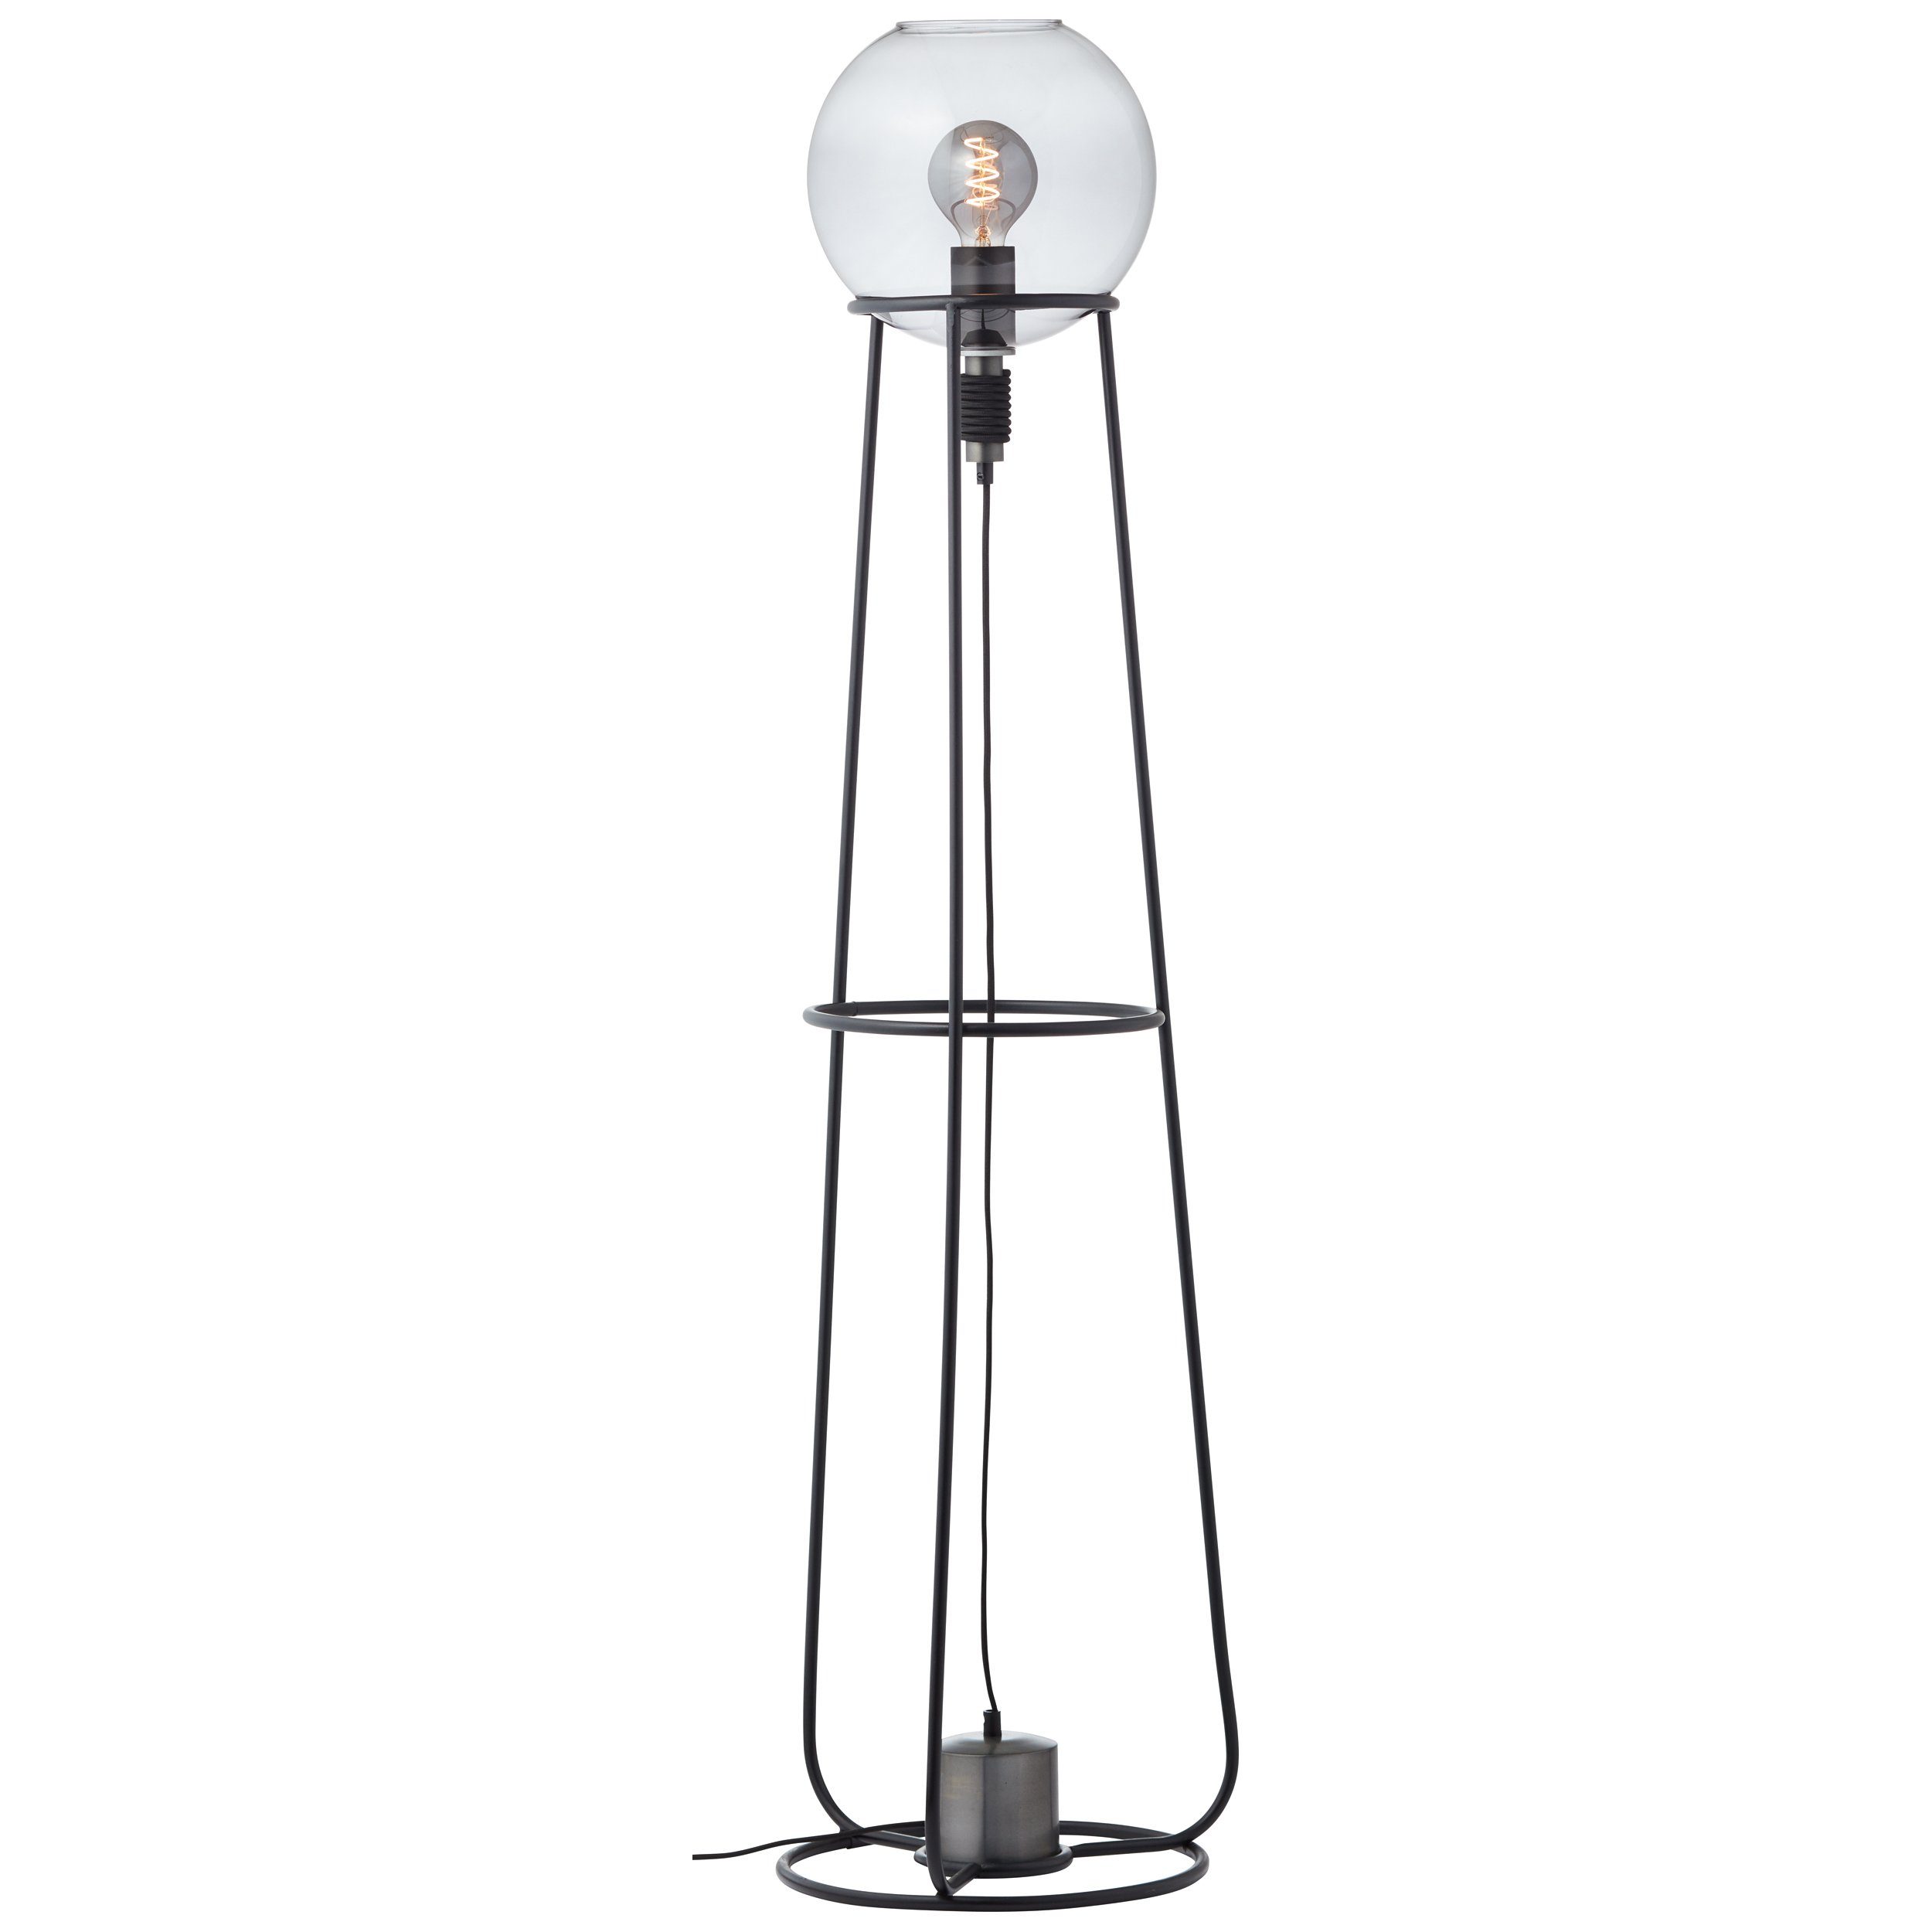 Beliebt und ausverkauft Brilliant Stehlampe Pheme, Pheme Standleuchte W A60, 1x schwarz/silber, Metall/Glas, 1flg E27, 52